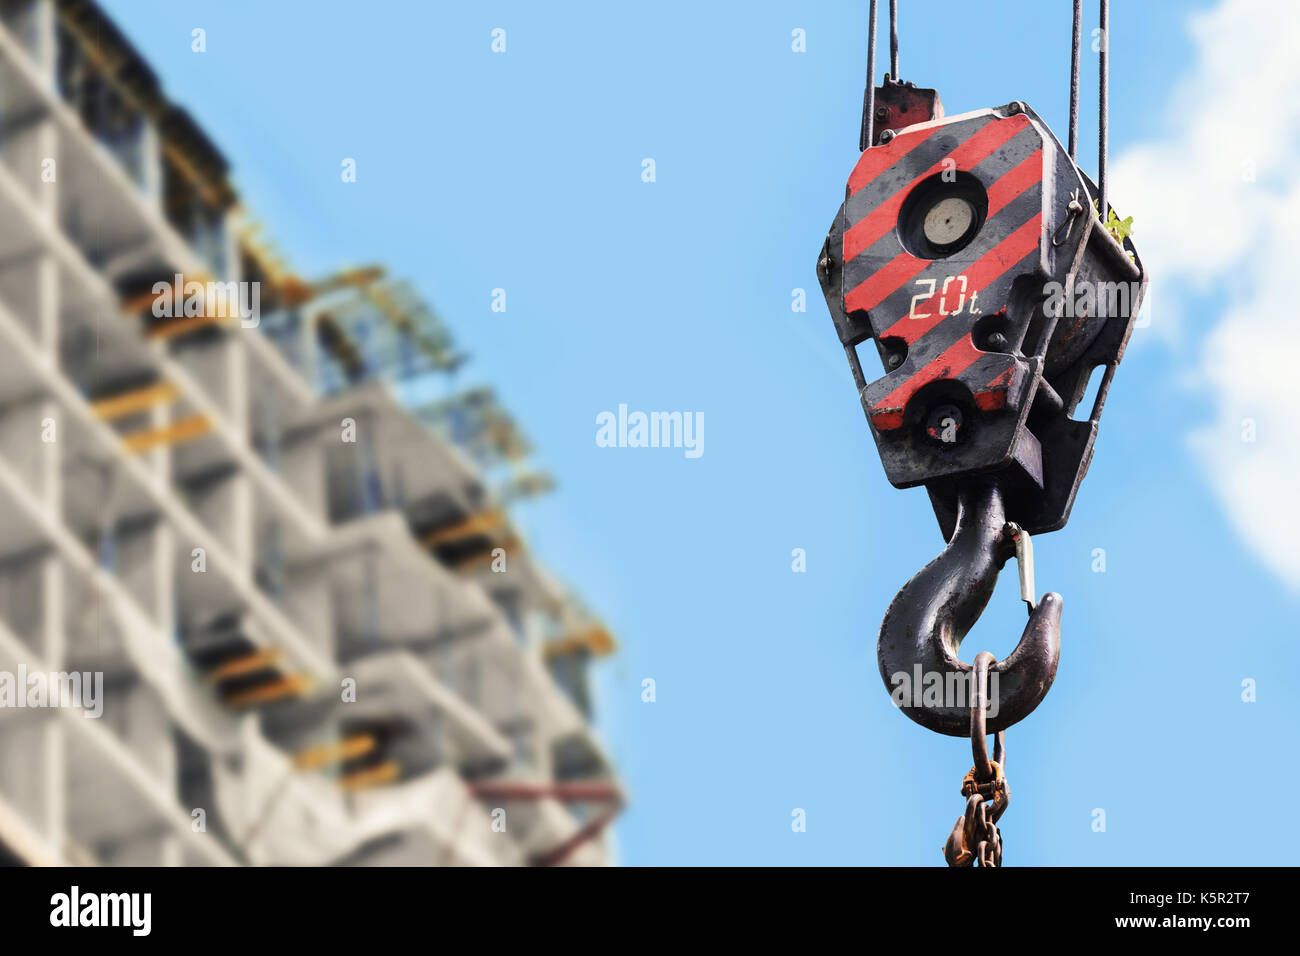 building construction site - crane hook against blue sky Stock Photo